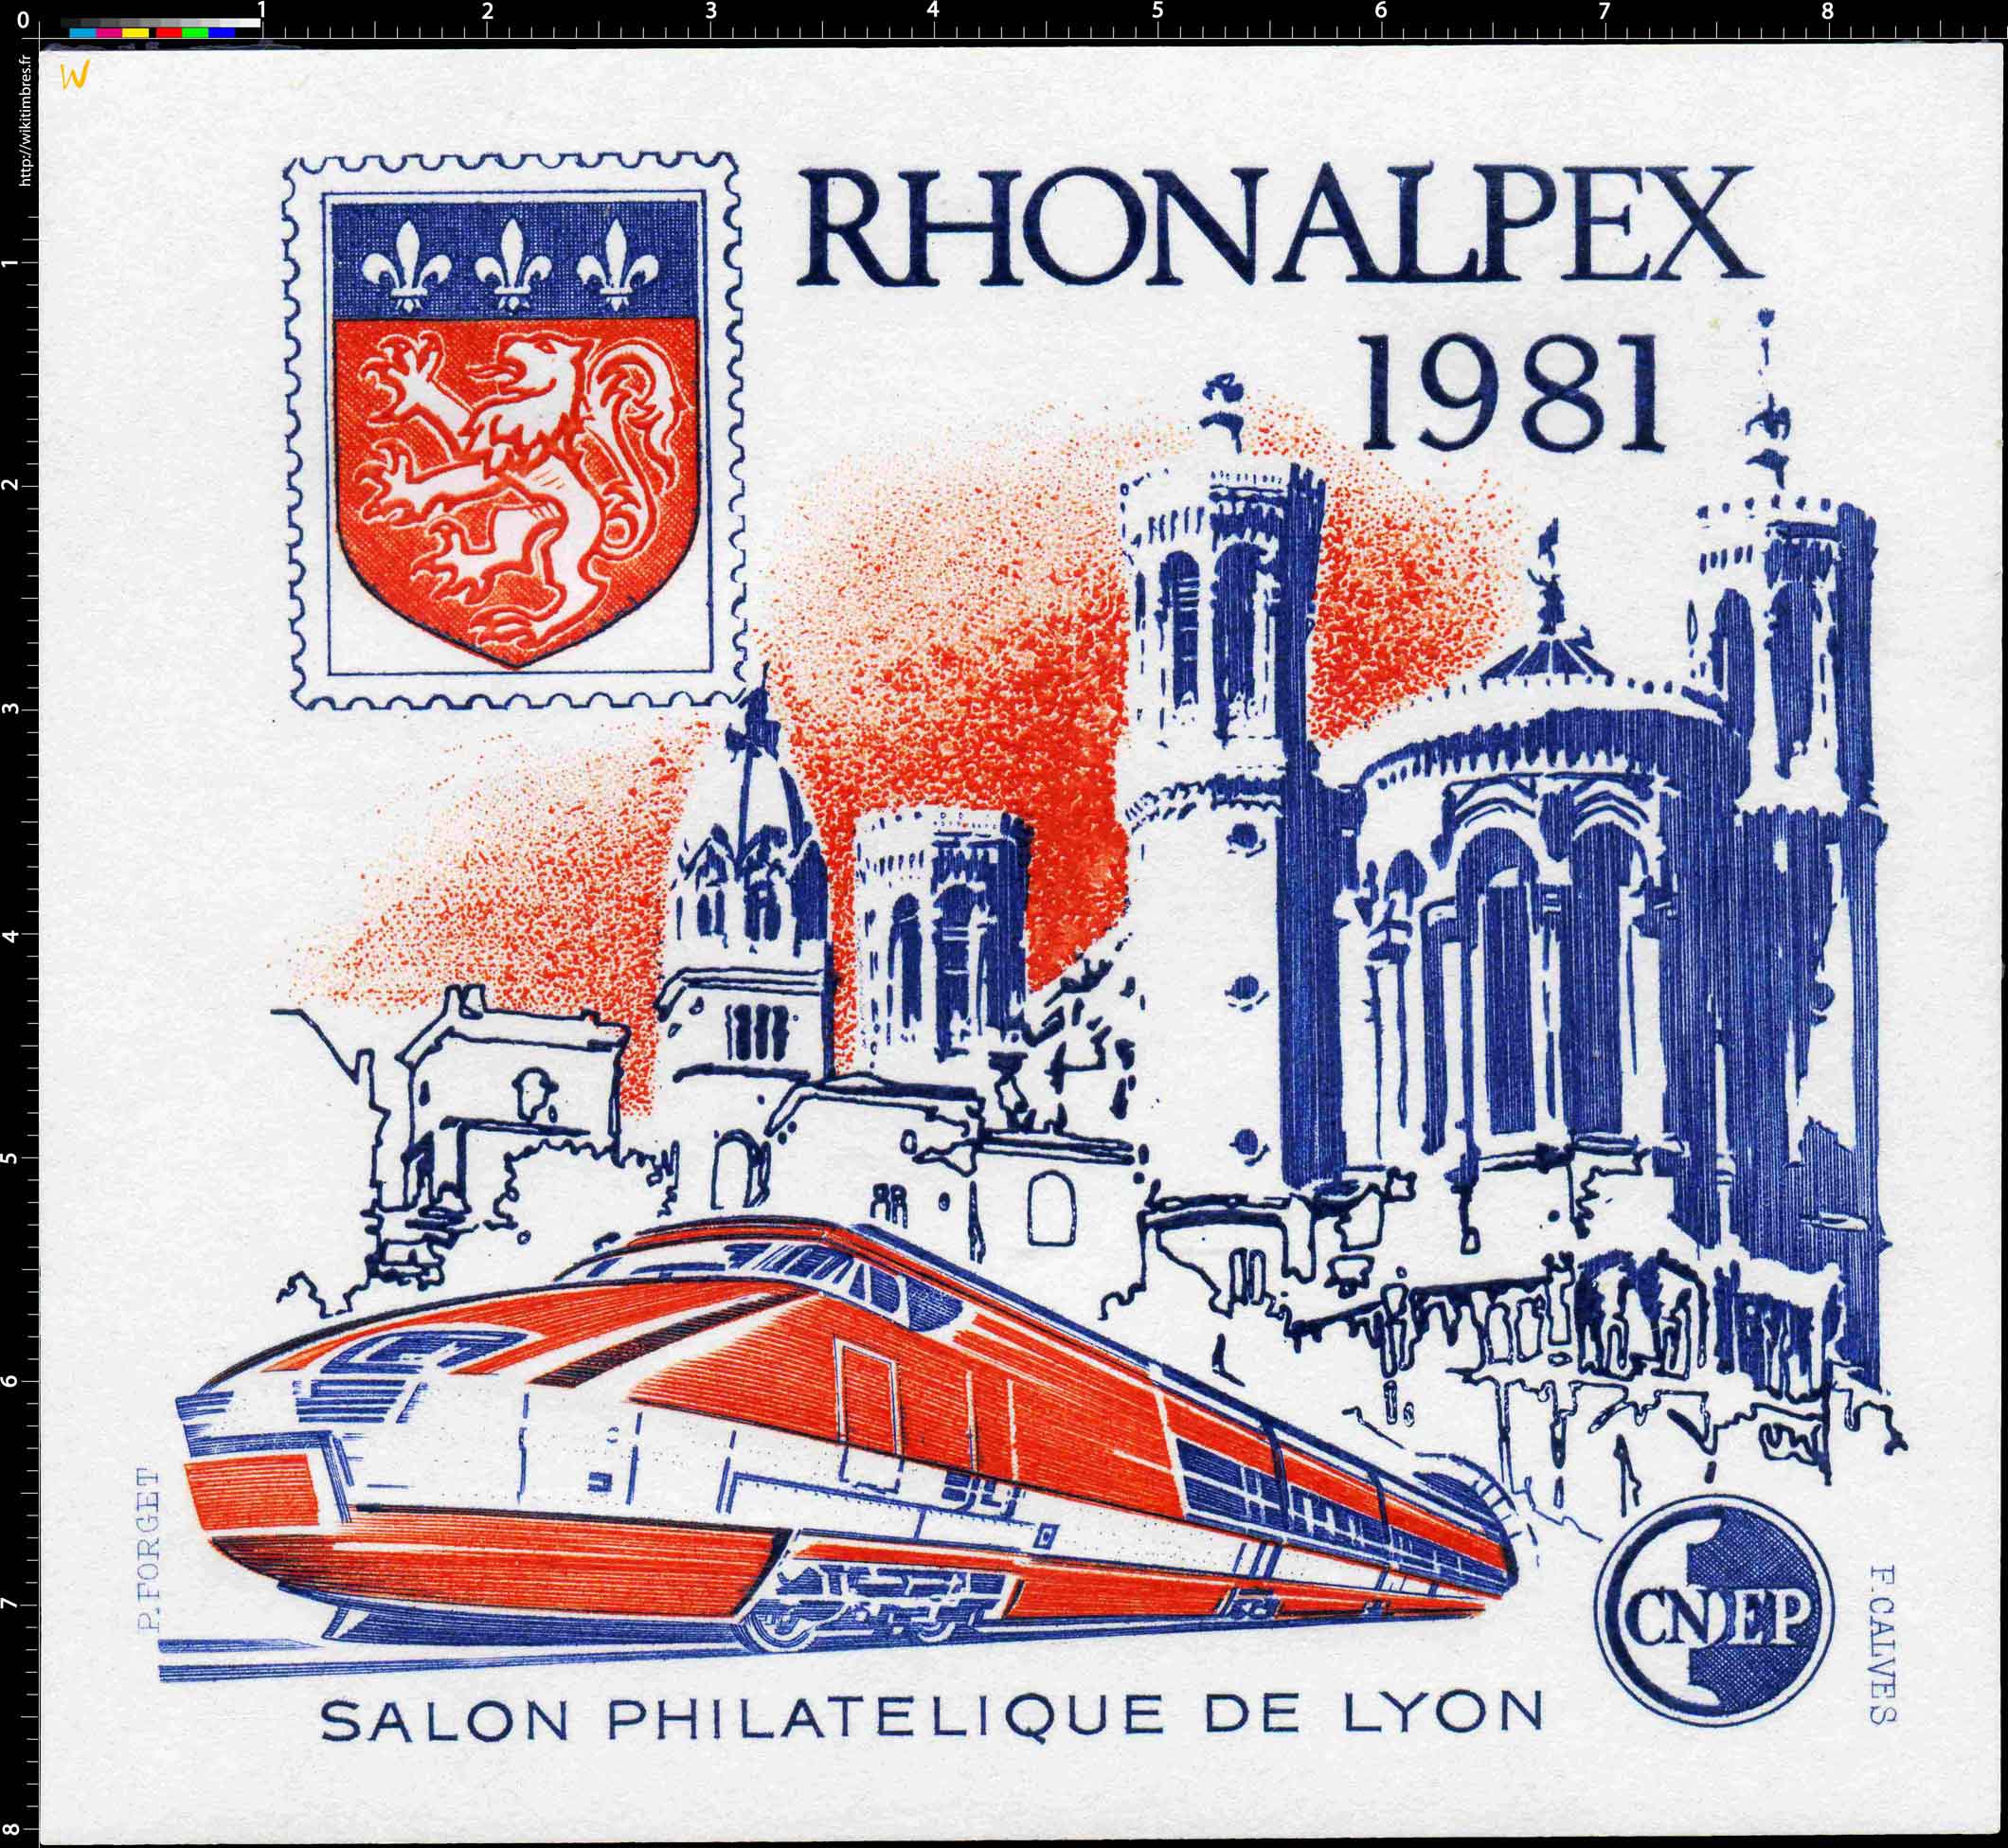 1981 Rhonalpex Salon philatélique de Lyon CNEP